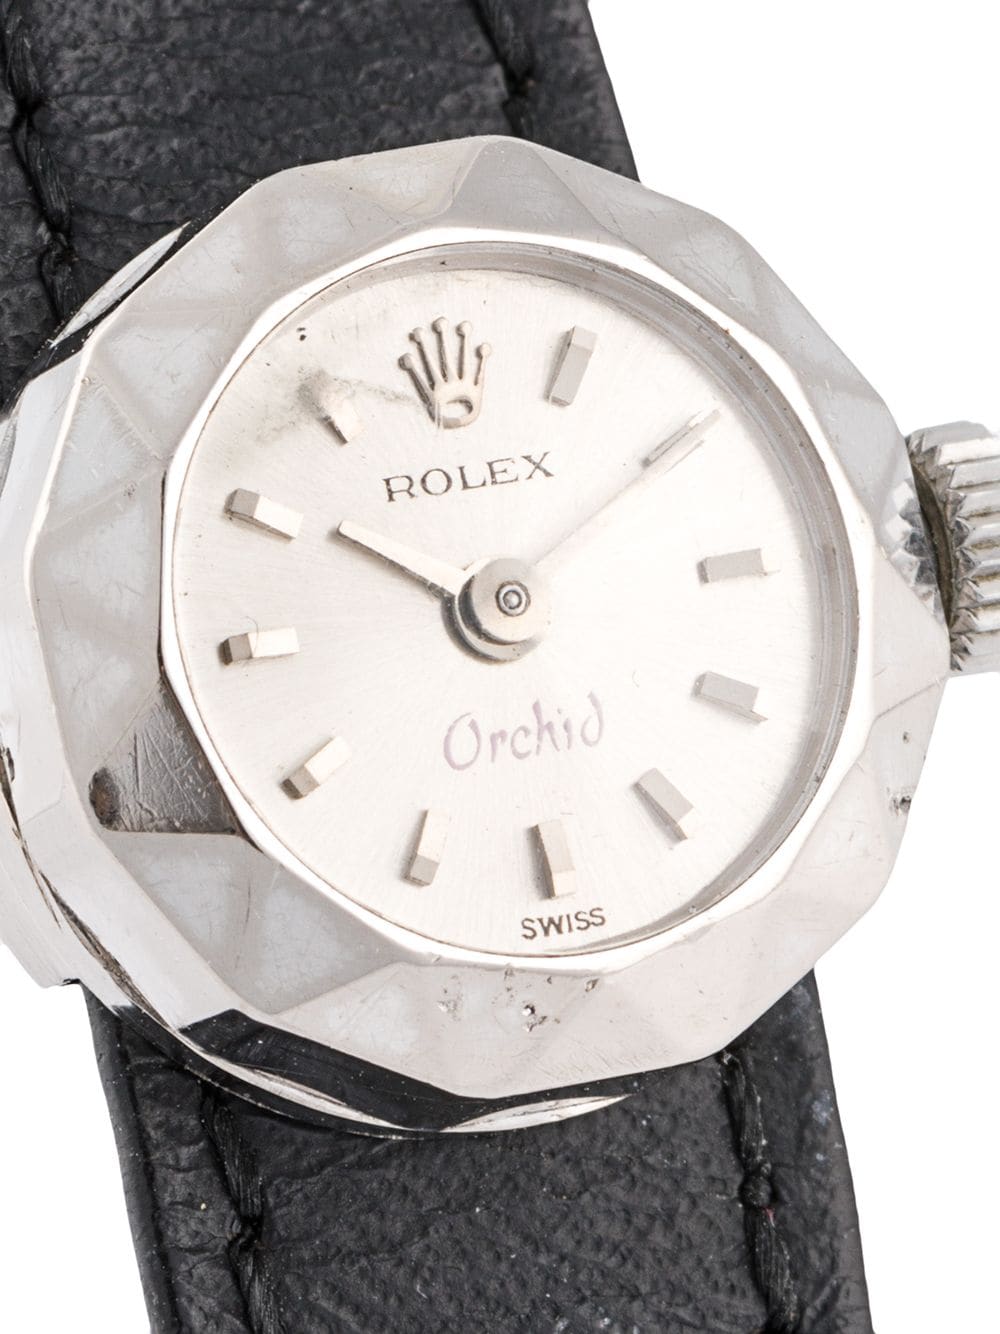 фото Rolex наручные часы orchid antique 20 мм